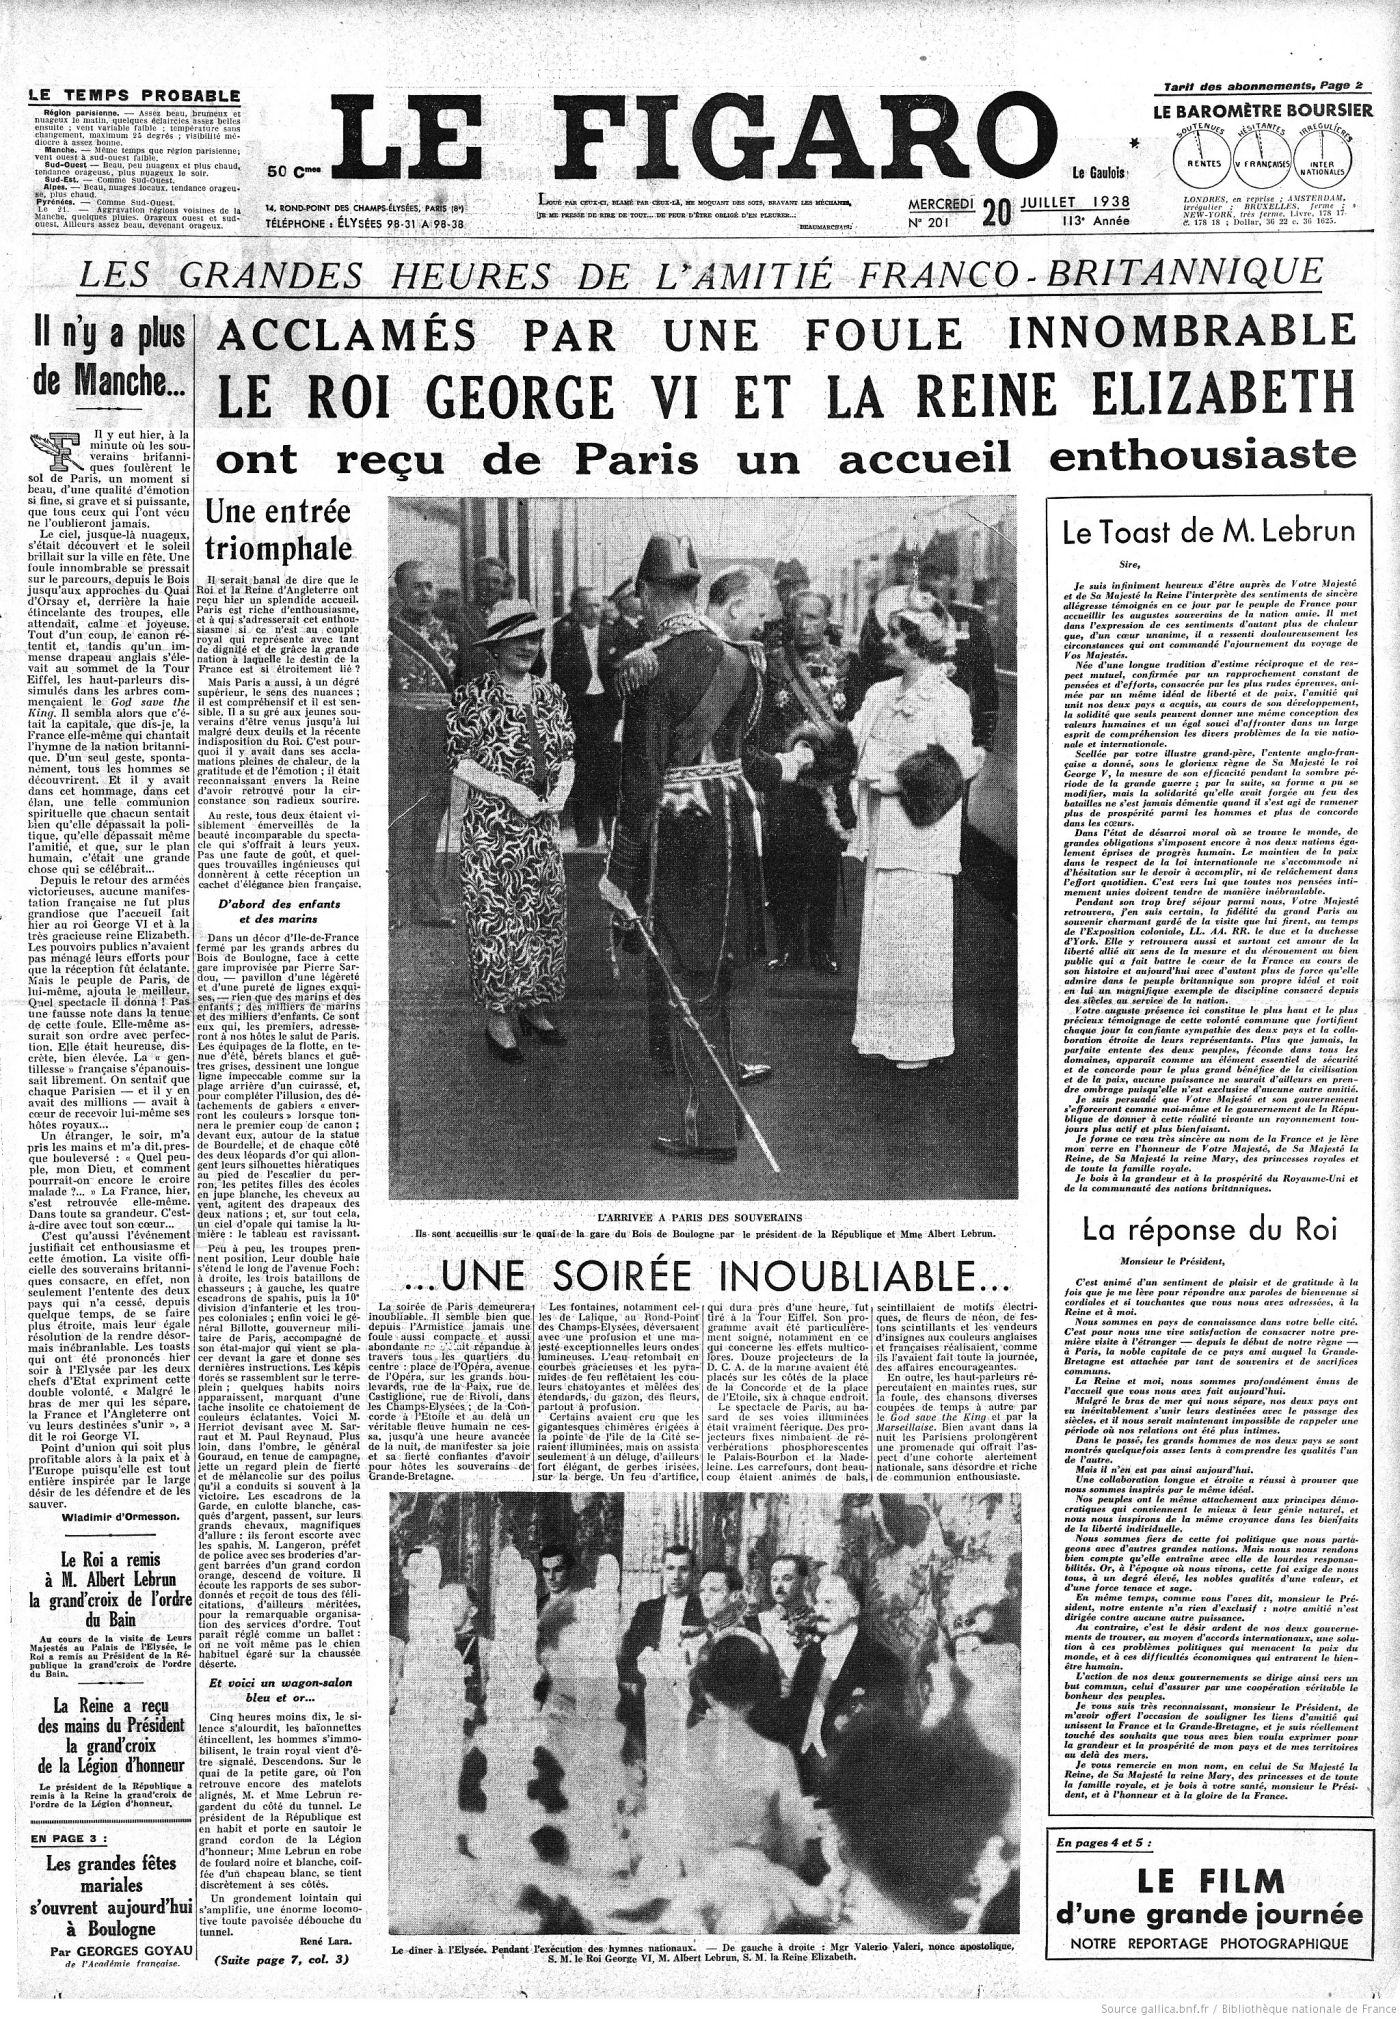 Le Figaro du 20 juillet 1938 www.gallica.bnf.fr